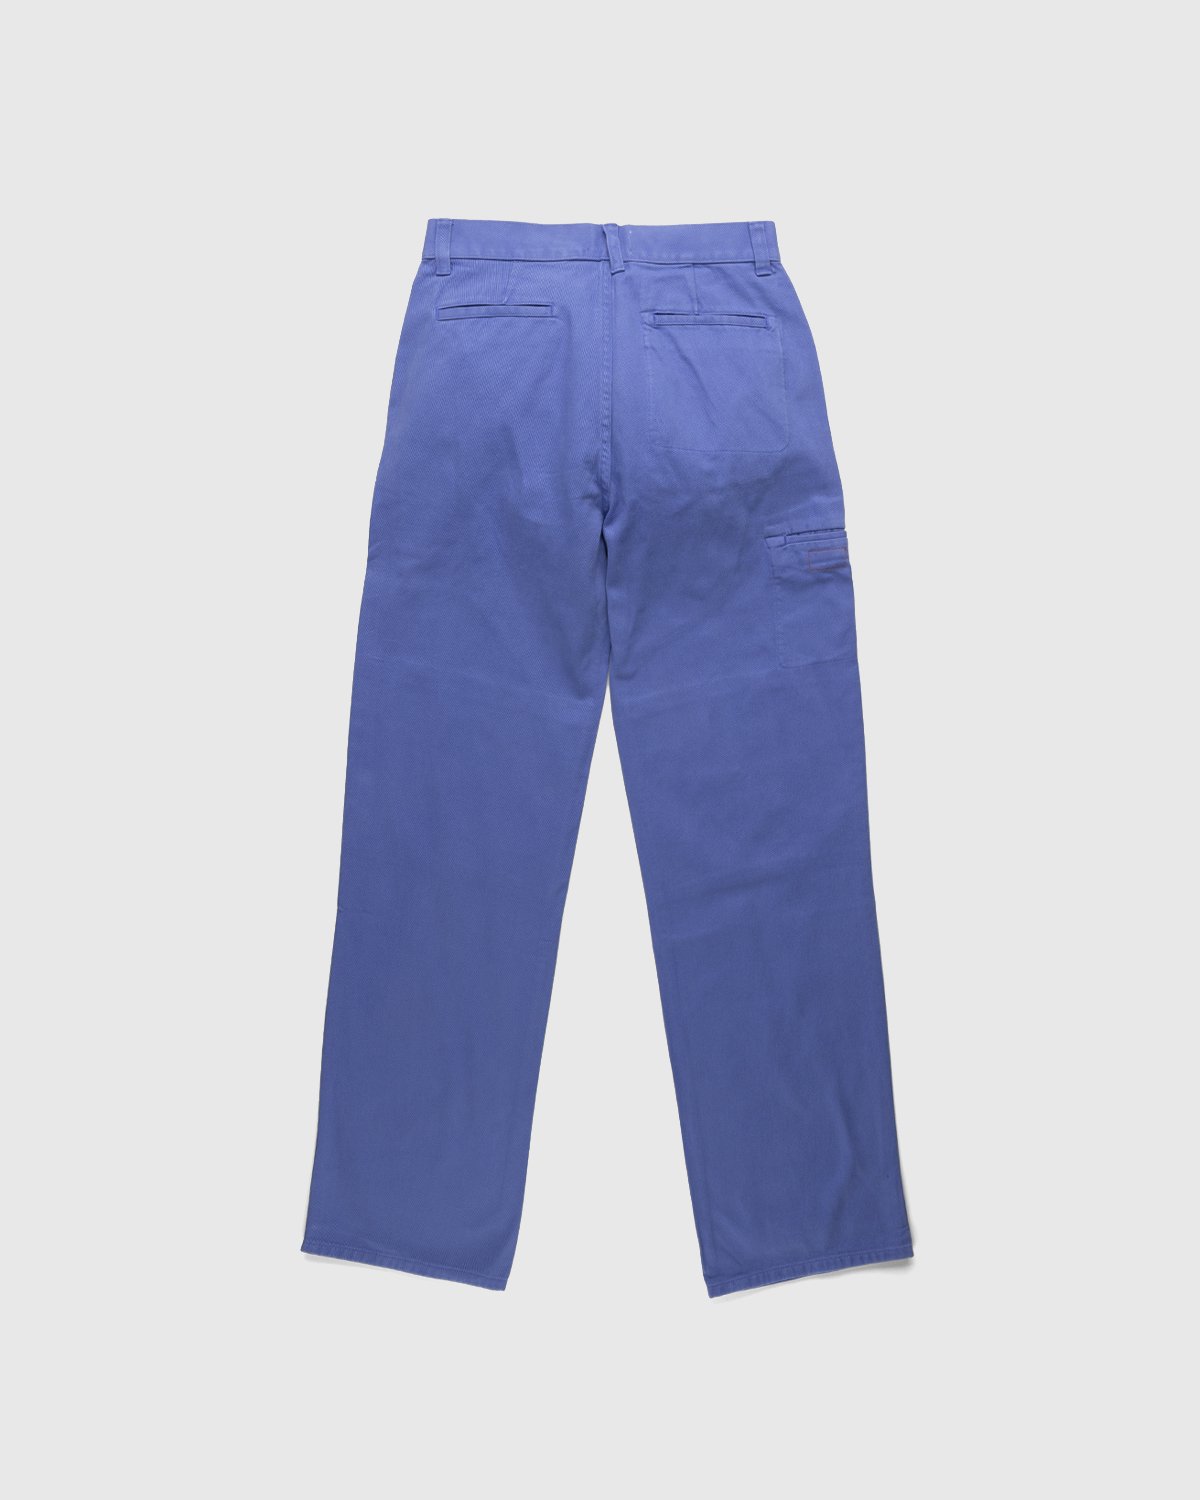 Heron Preston x Calvin Klein - Mens Straight Leg Utility Pant Amparo Blue - Clothing - Blue - Image 2